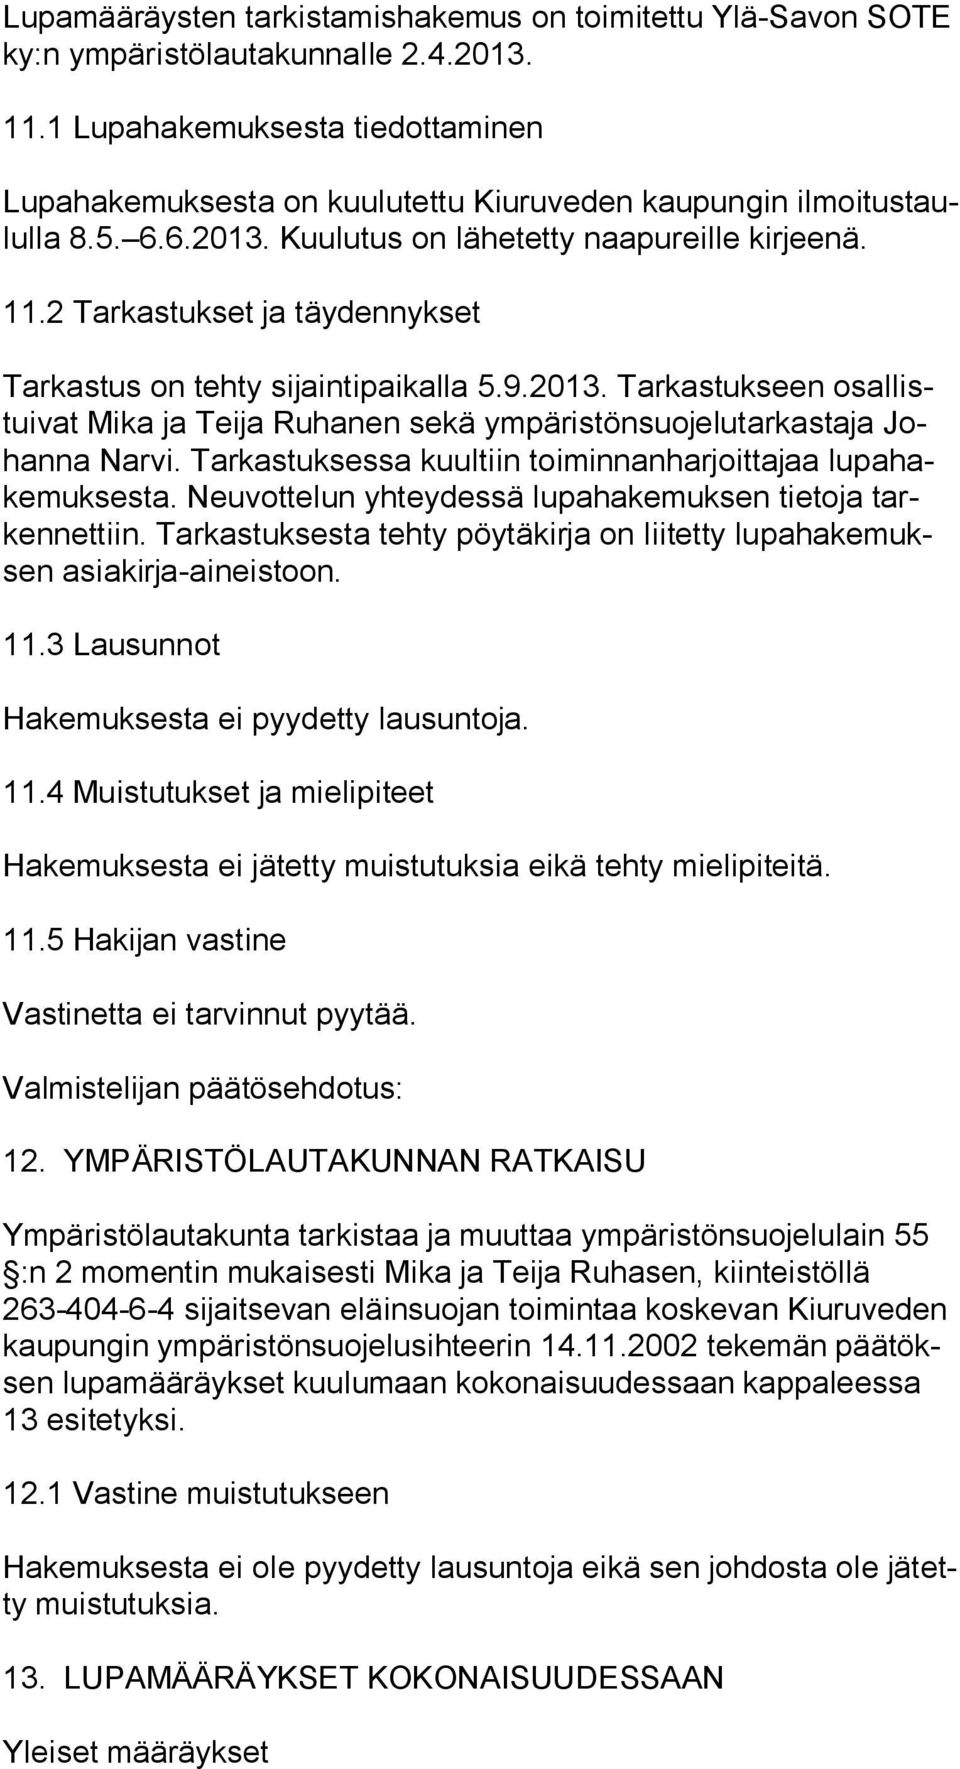 2 Tarkastukset ja täydennykset Tarkastus on tehty sijaintipaikalla 5.9.2013. Tarkastukseen osal listui vat Mika ja Teija Ruhanen sekä ympäristönsuojelutarkastaja Johan na Narvi.